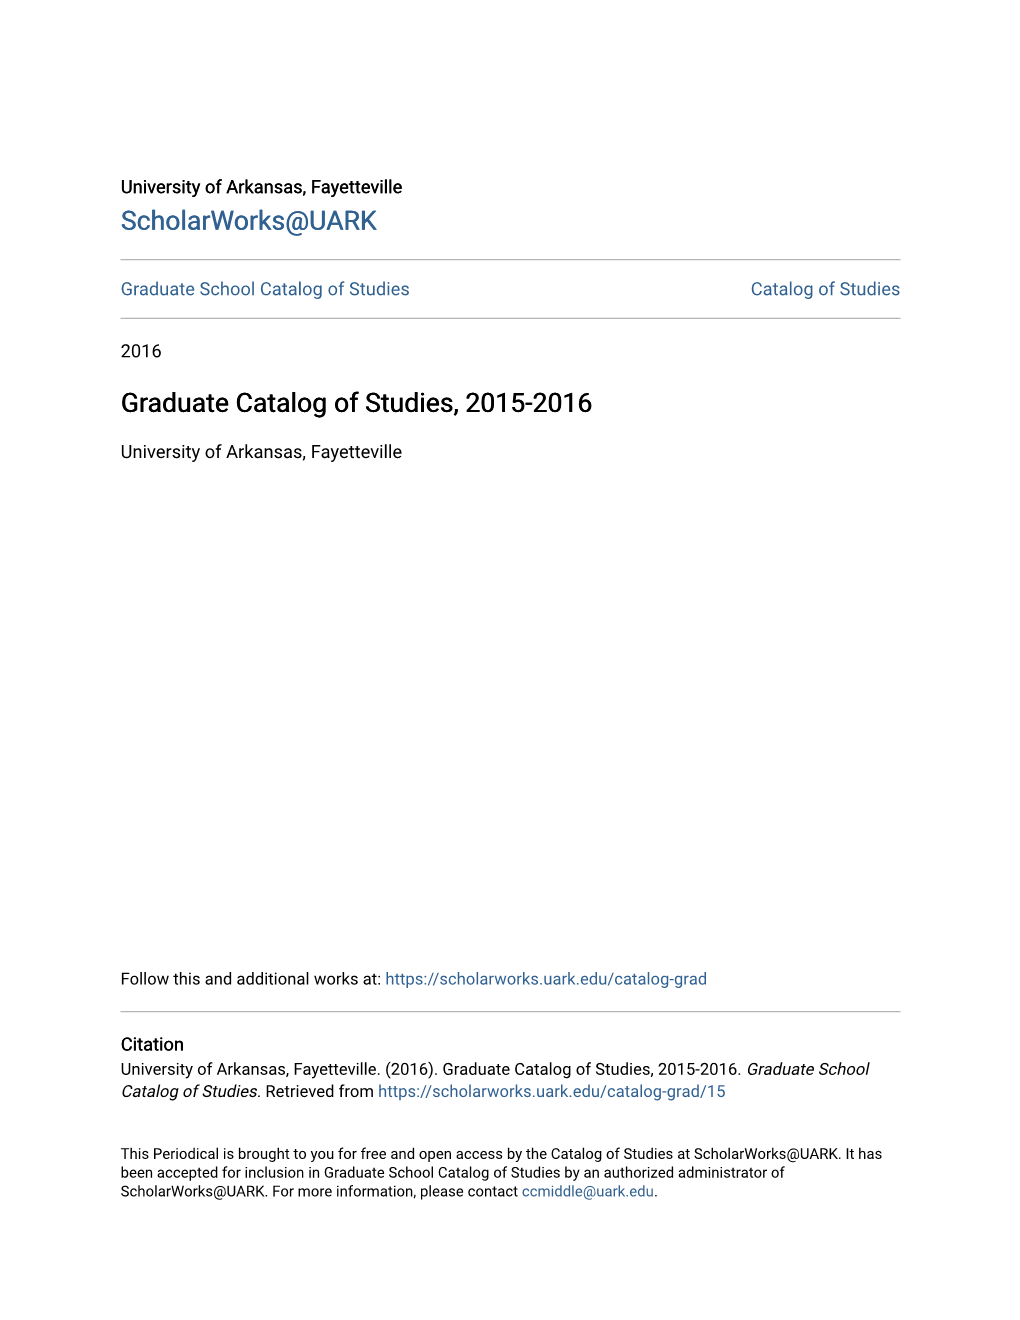 Graduate Catalog of Studies, 2015-2016